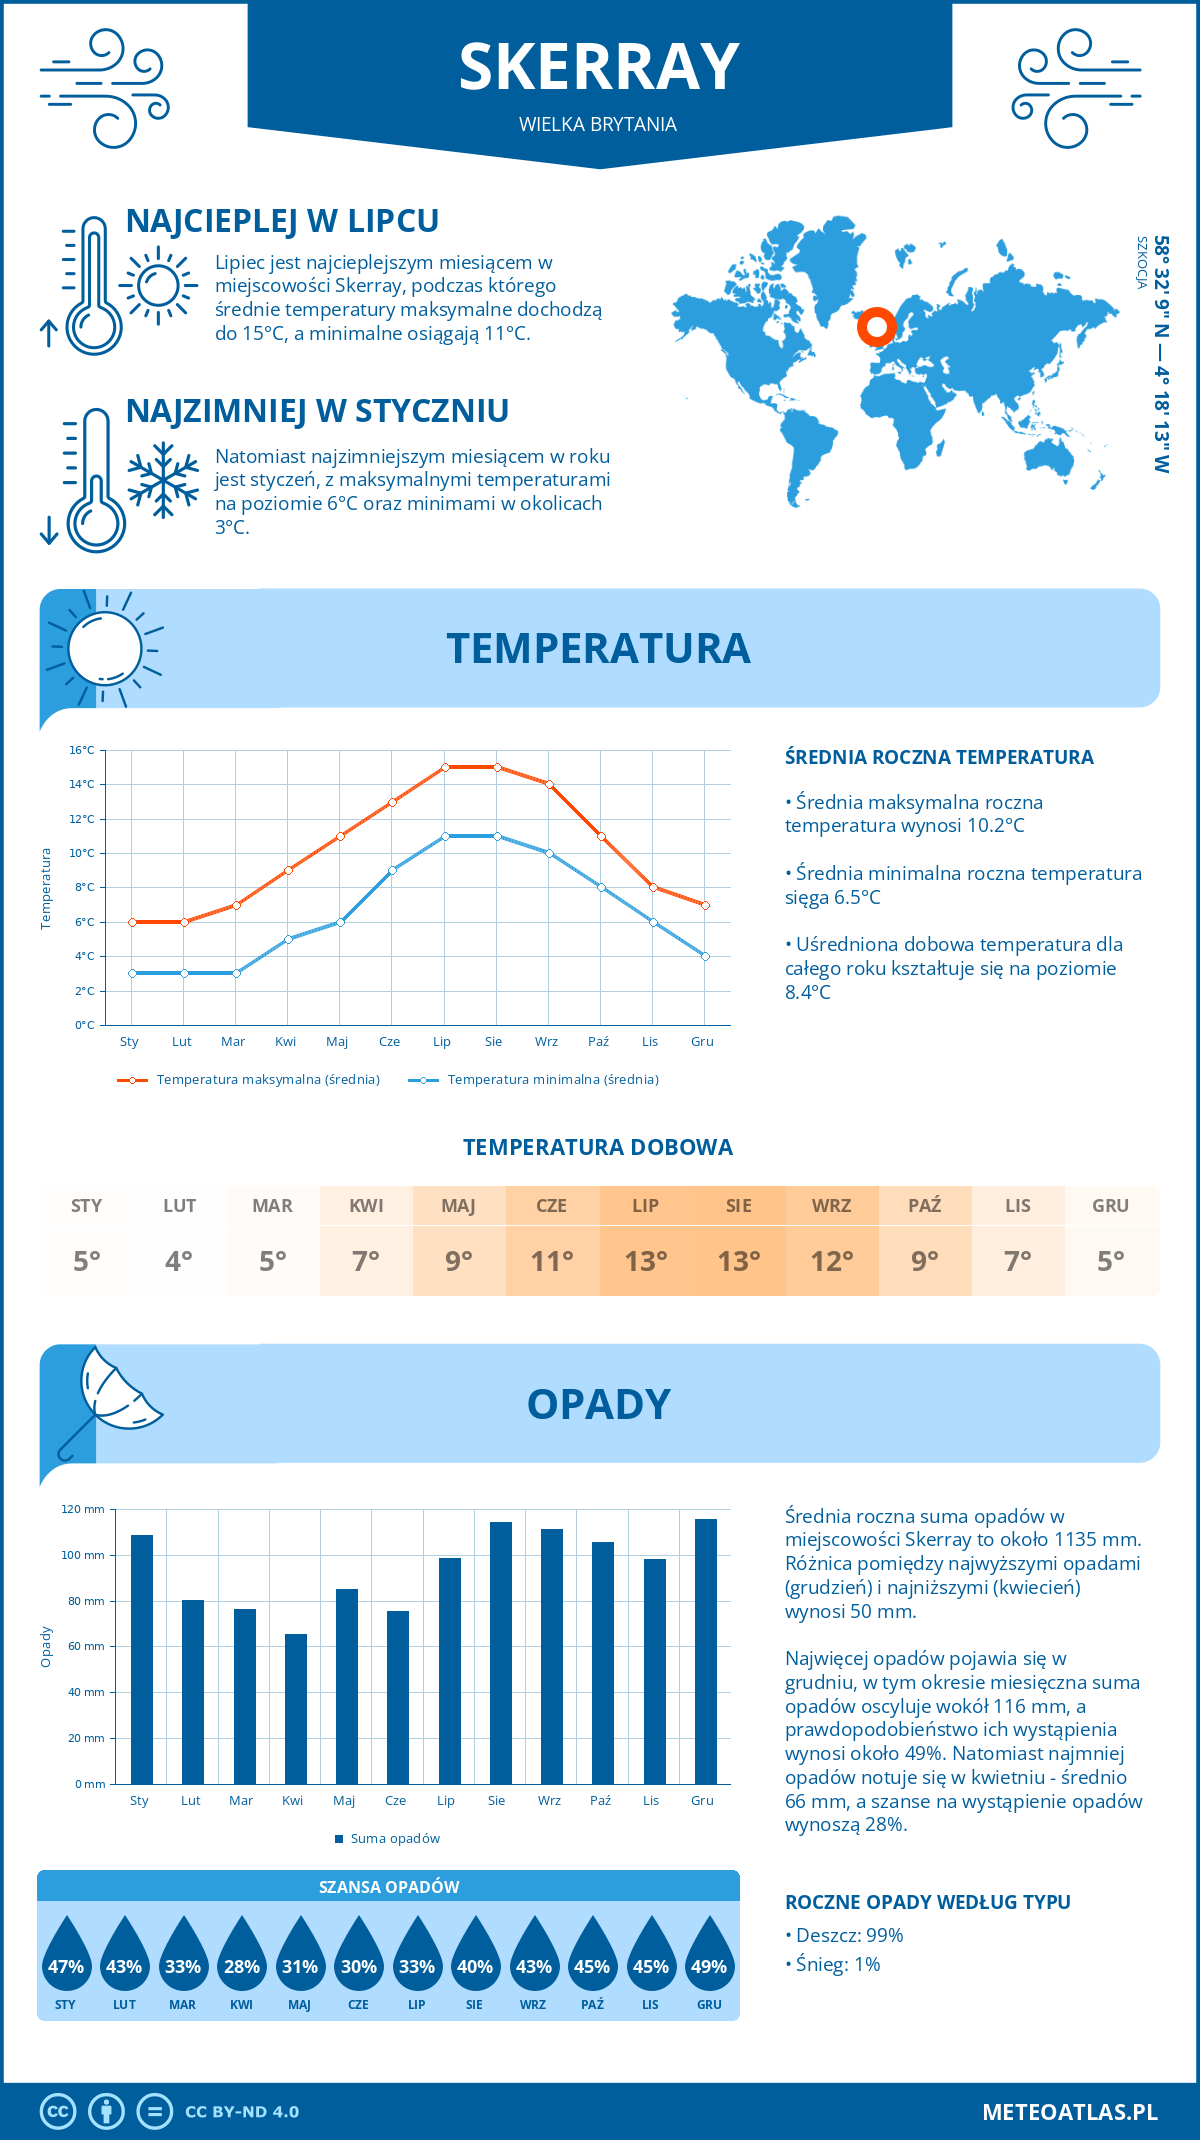 Pogoda Skerray (Wielka Brytania). Temperatura oraz opady.